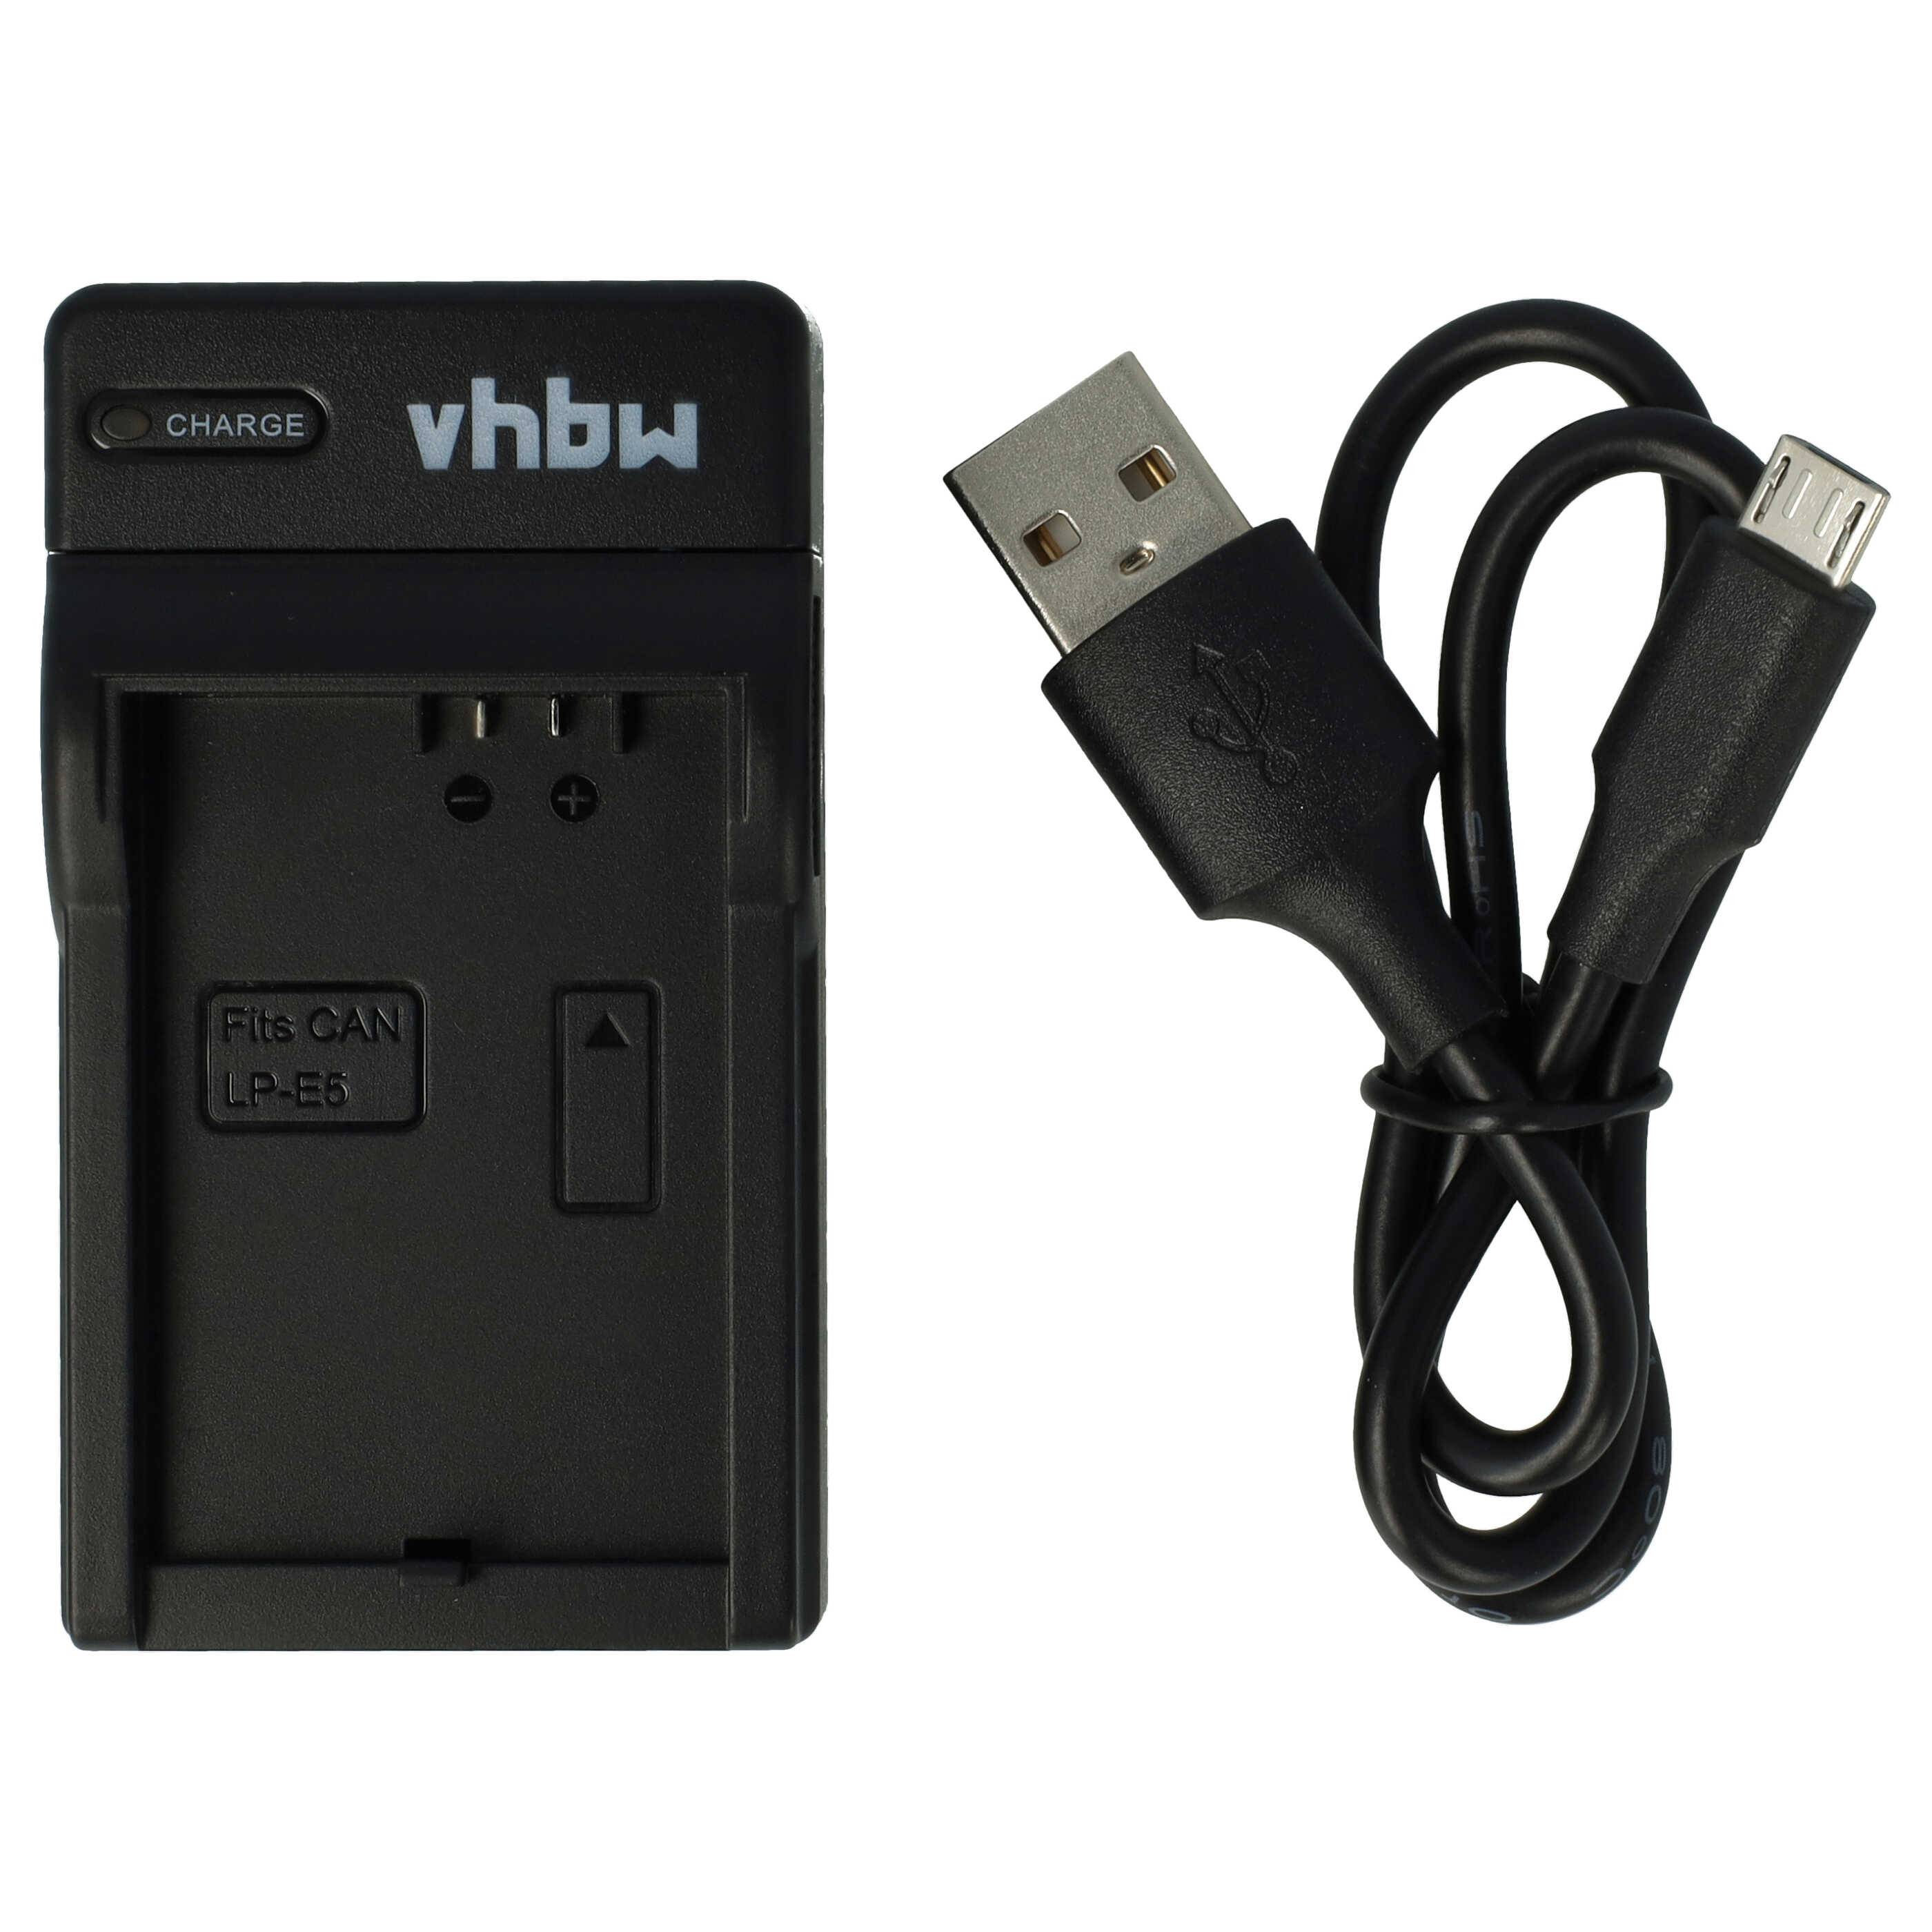 Spannungswandler 5V USB auf 12V für das Ladegerät 5101 kaufen